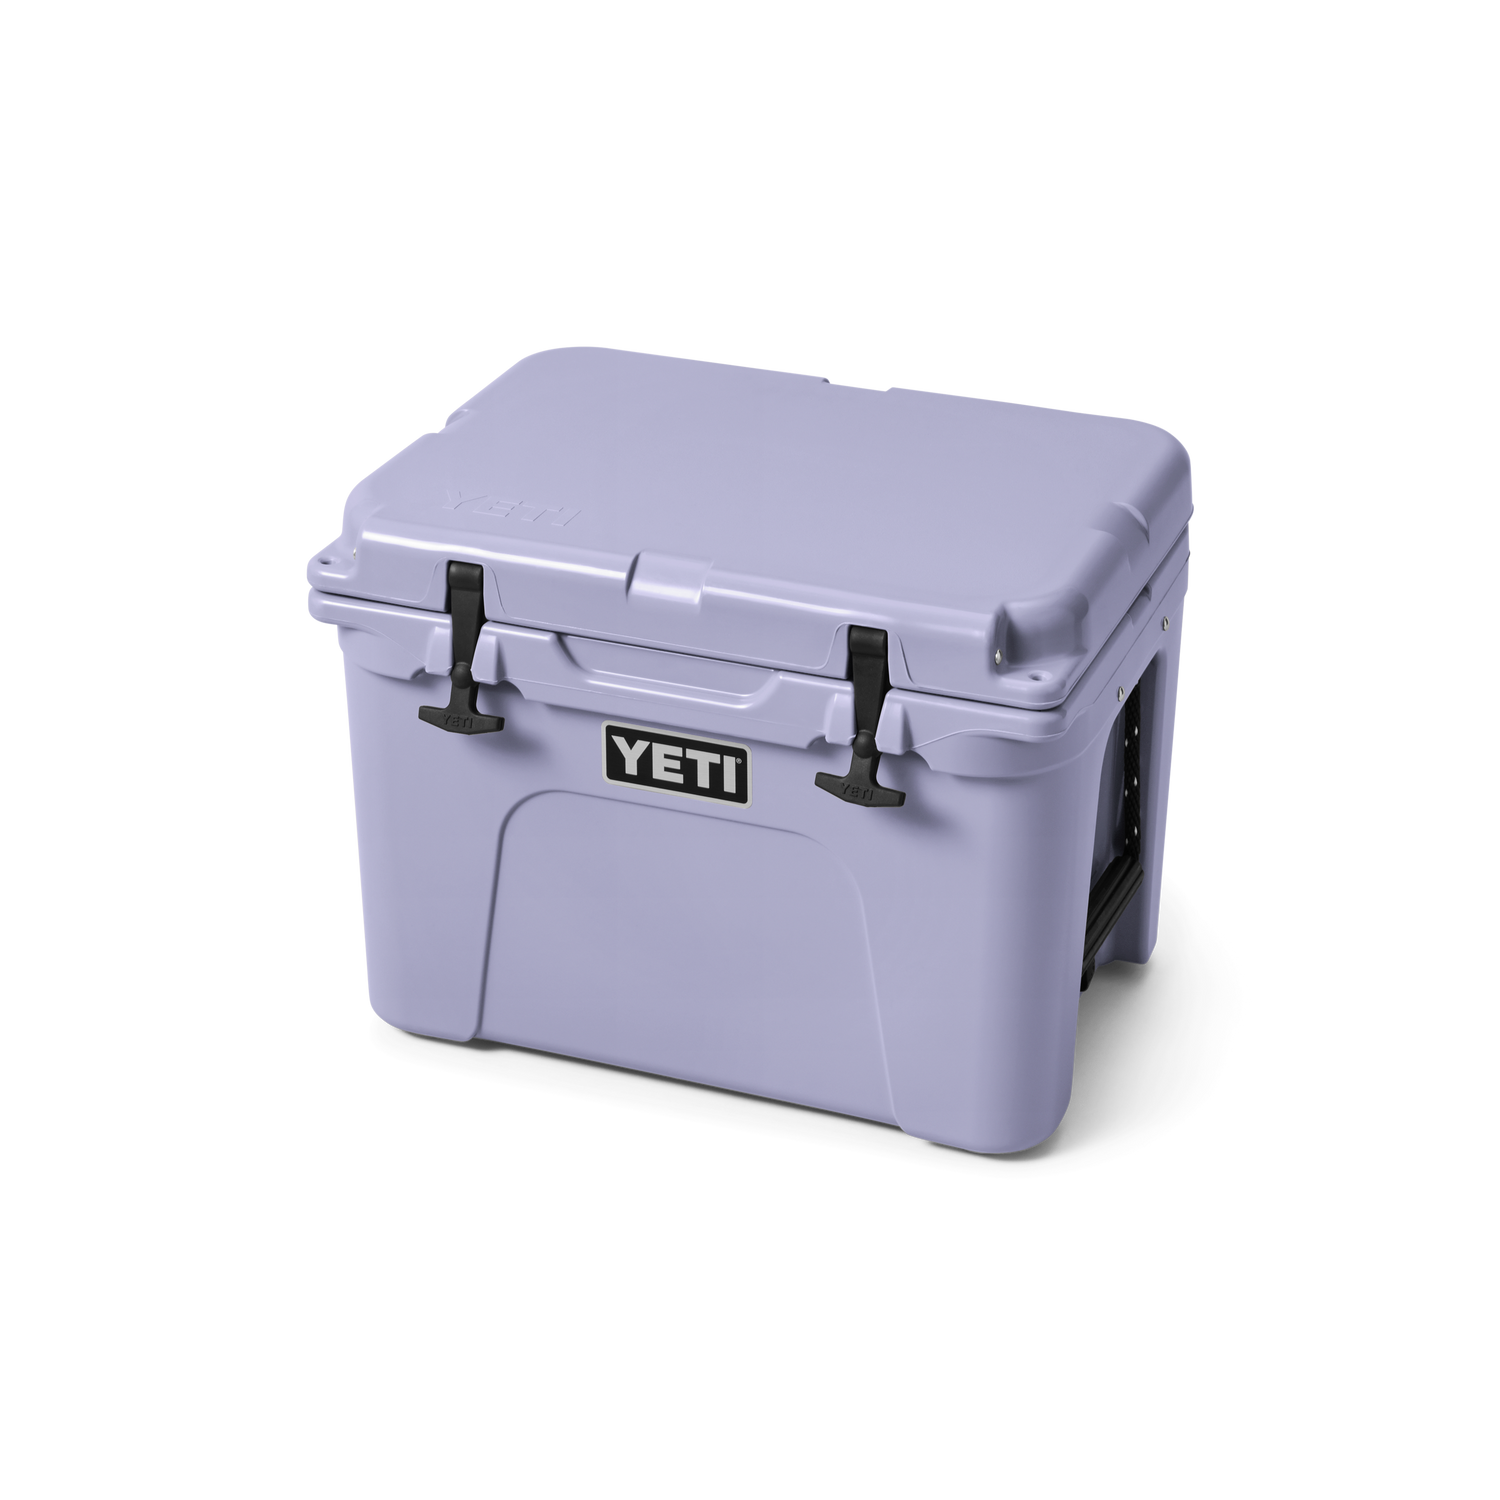 YETI Kühlbox Tundra 35 (Beige) - Thermoskannen & Isoliergefäße - Ausrüstung  - Outdoor Online Shop